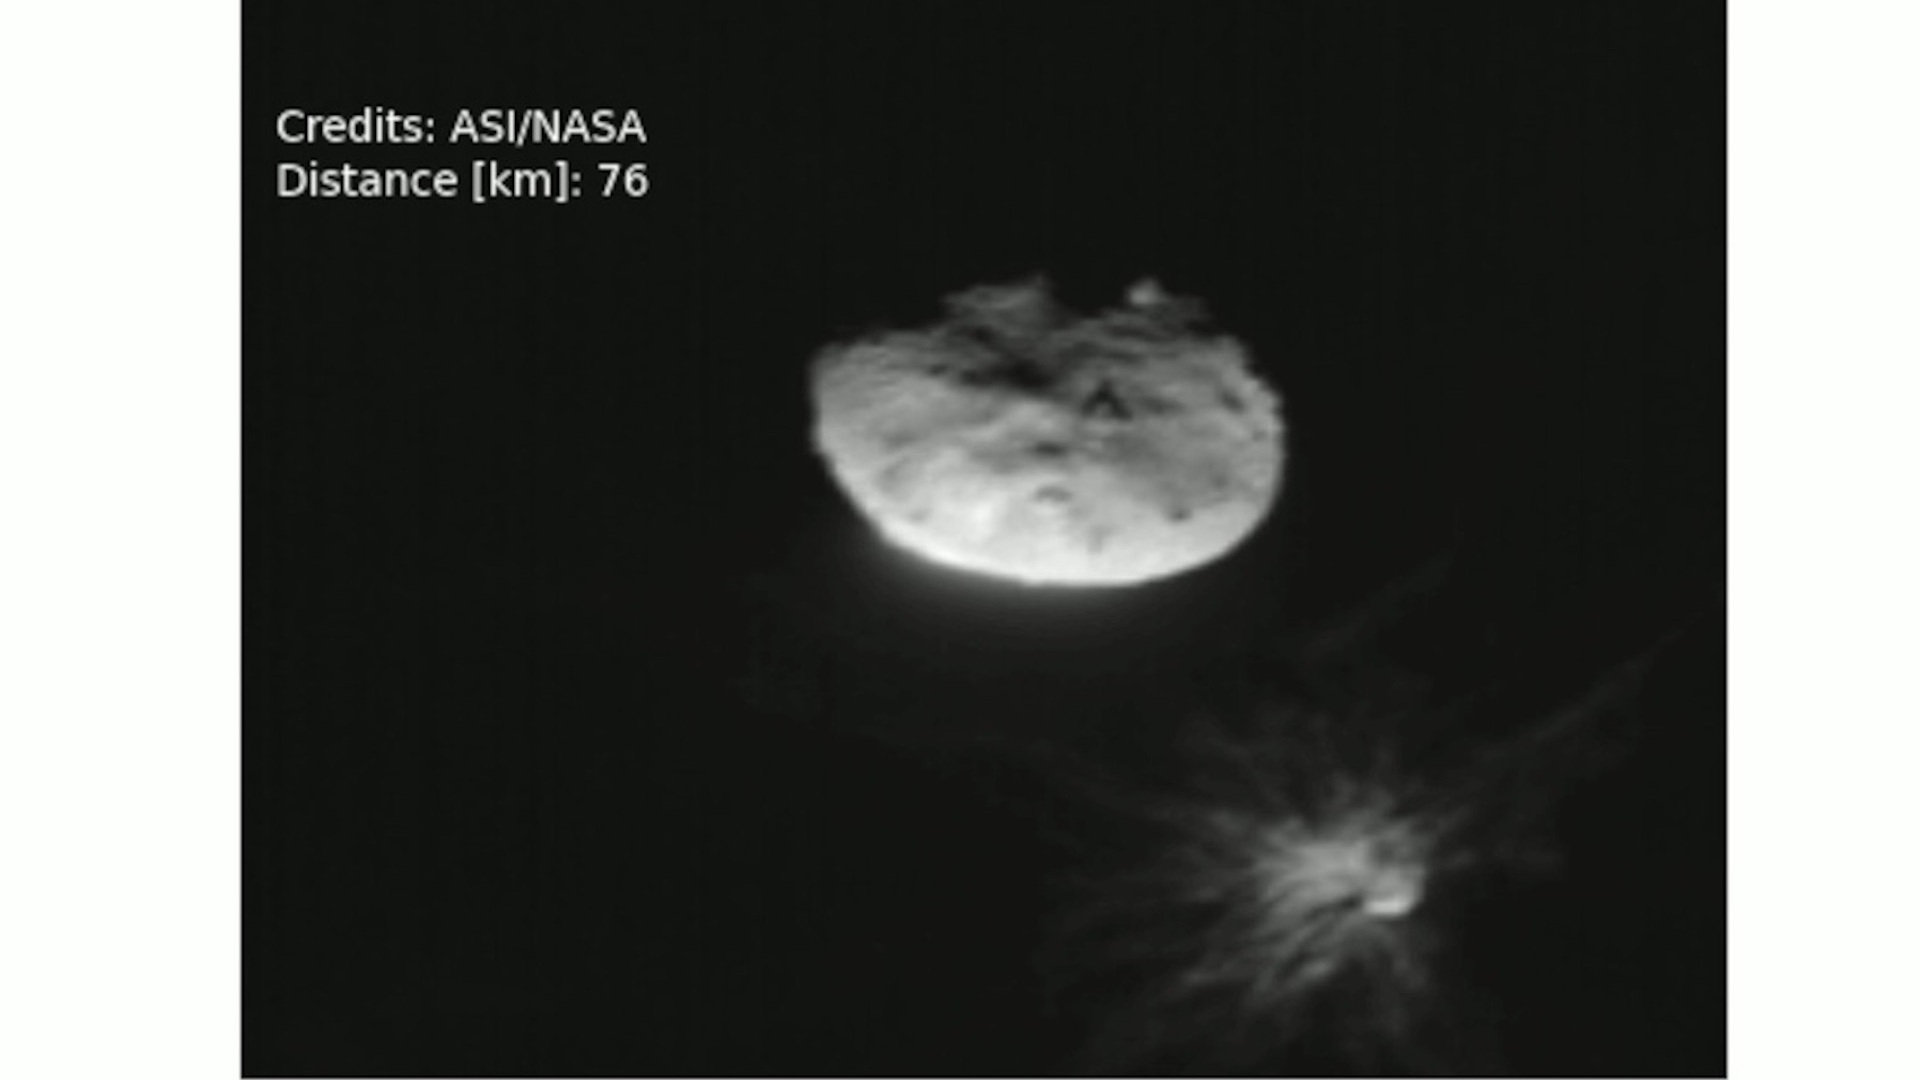 ASI - Presentate le ultime immagini di LICIACube durante la conferenza stampa NASA sugli ultimi aggiornamenti della missione DART